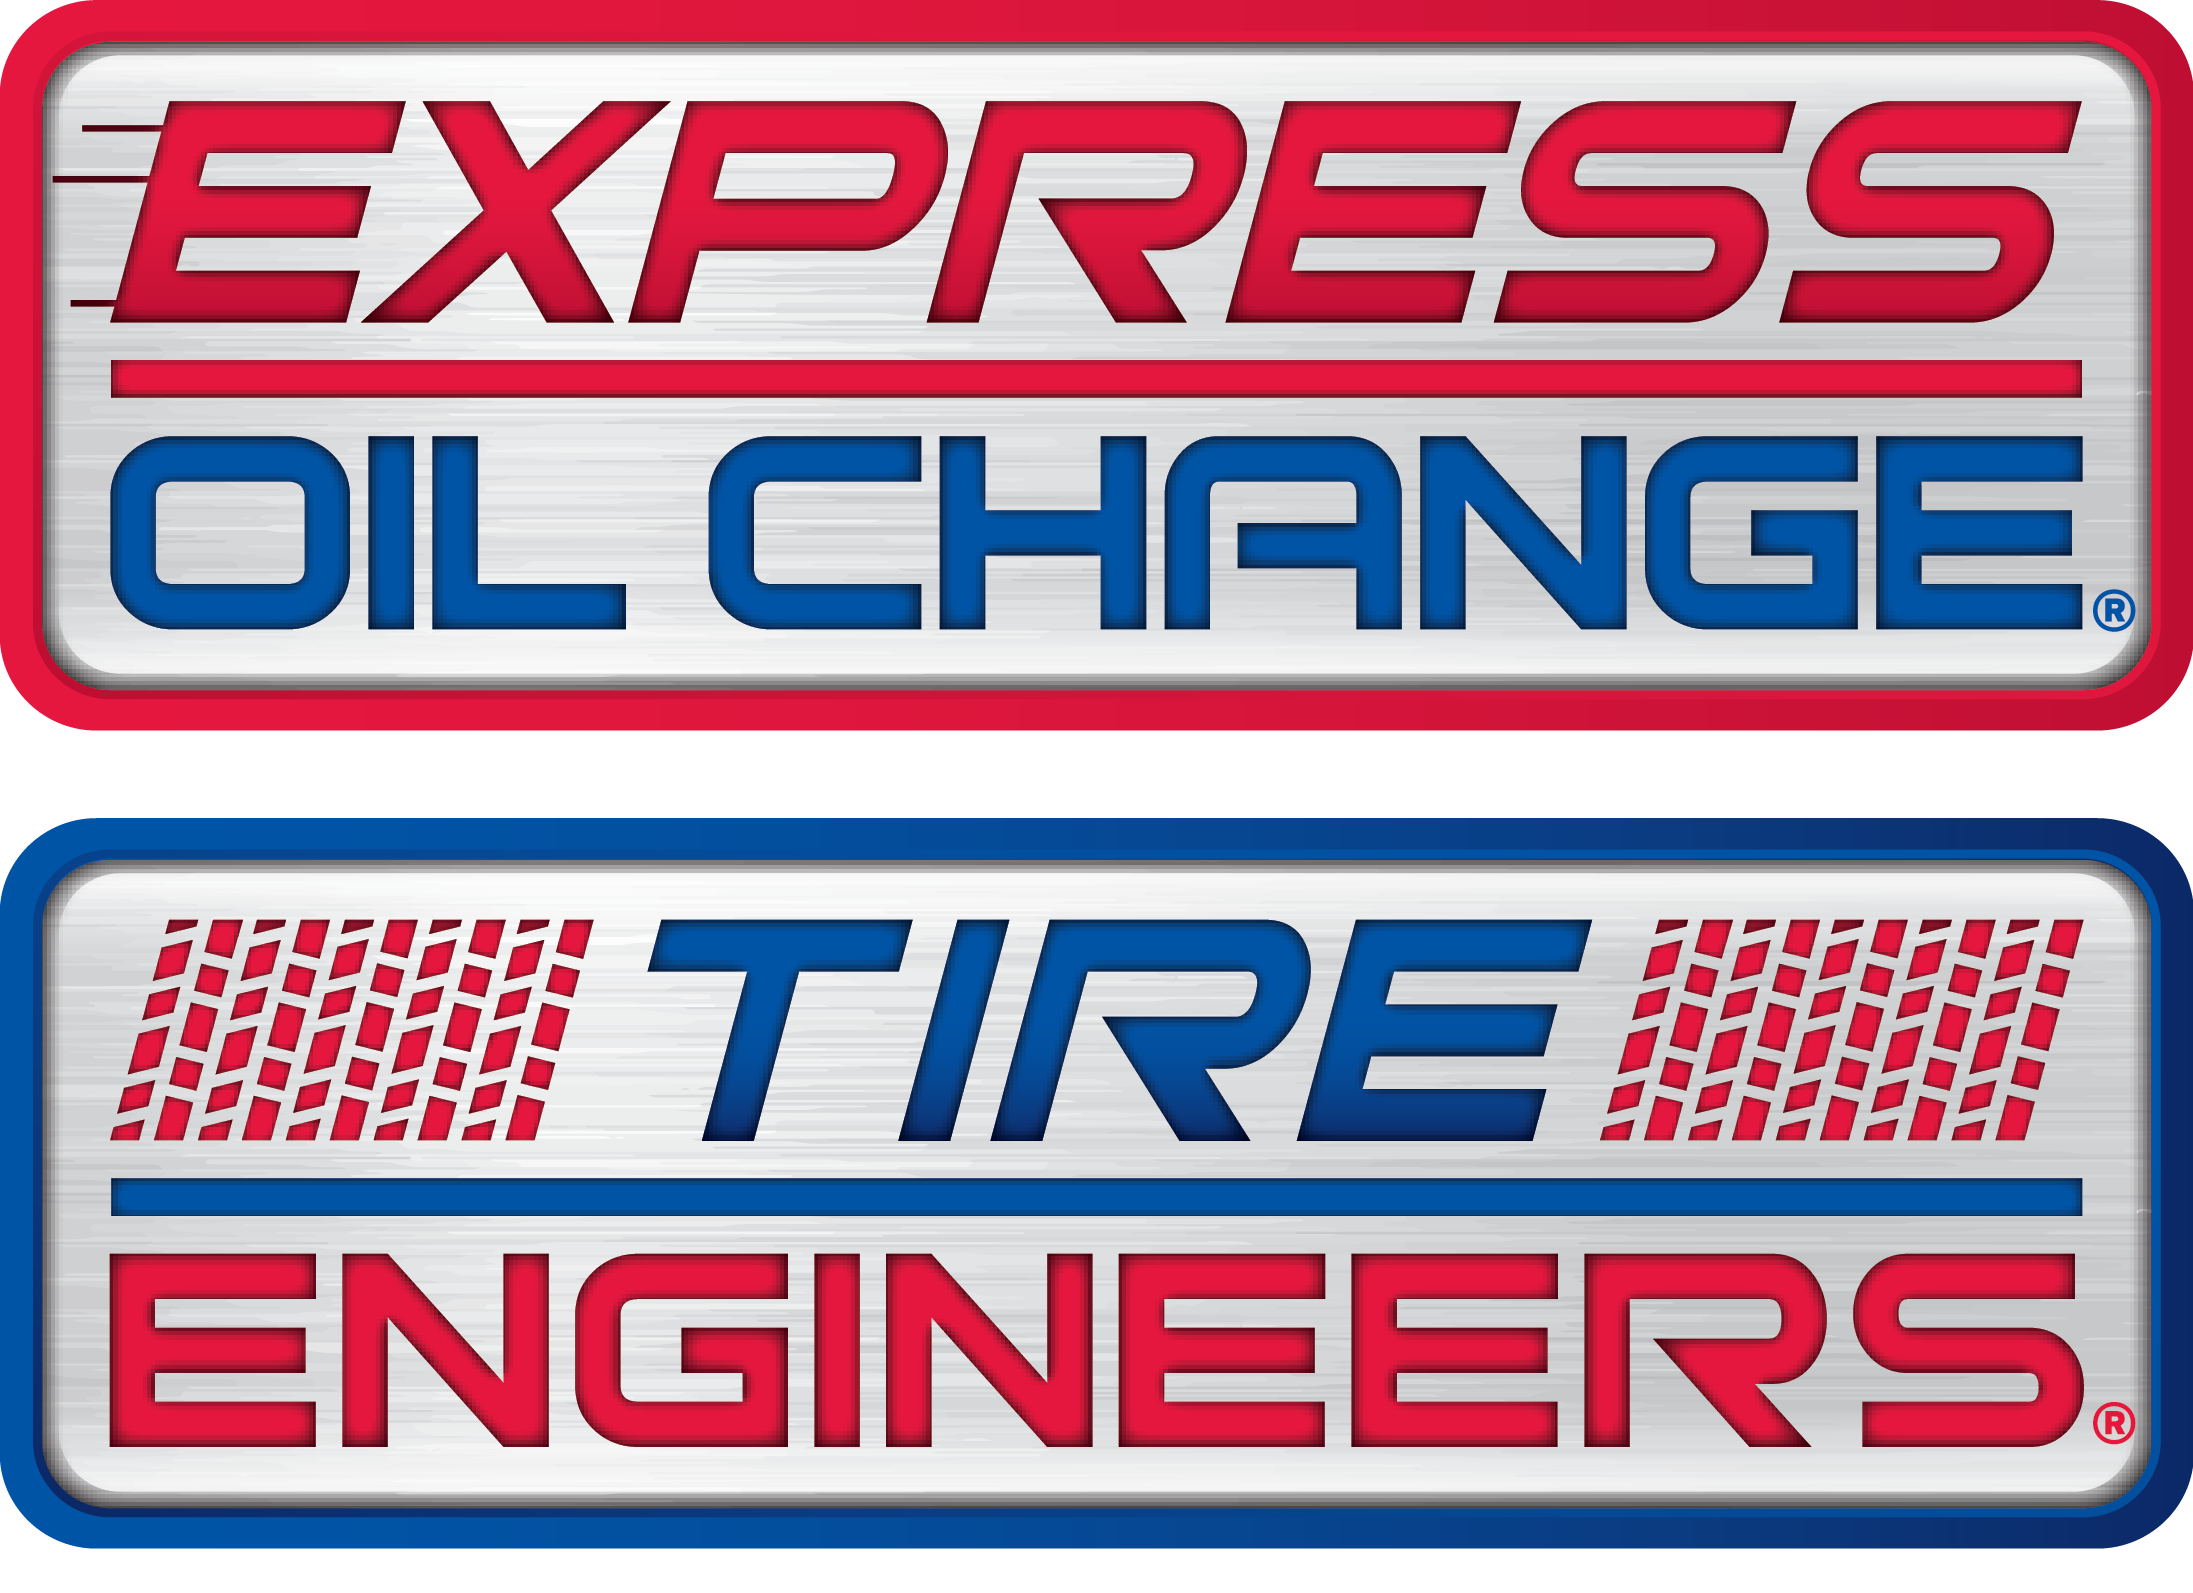 express oil change & tire engineers vert